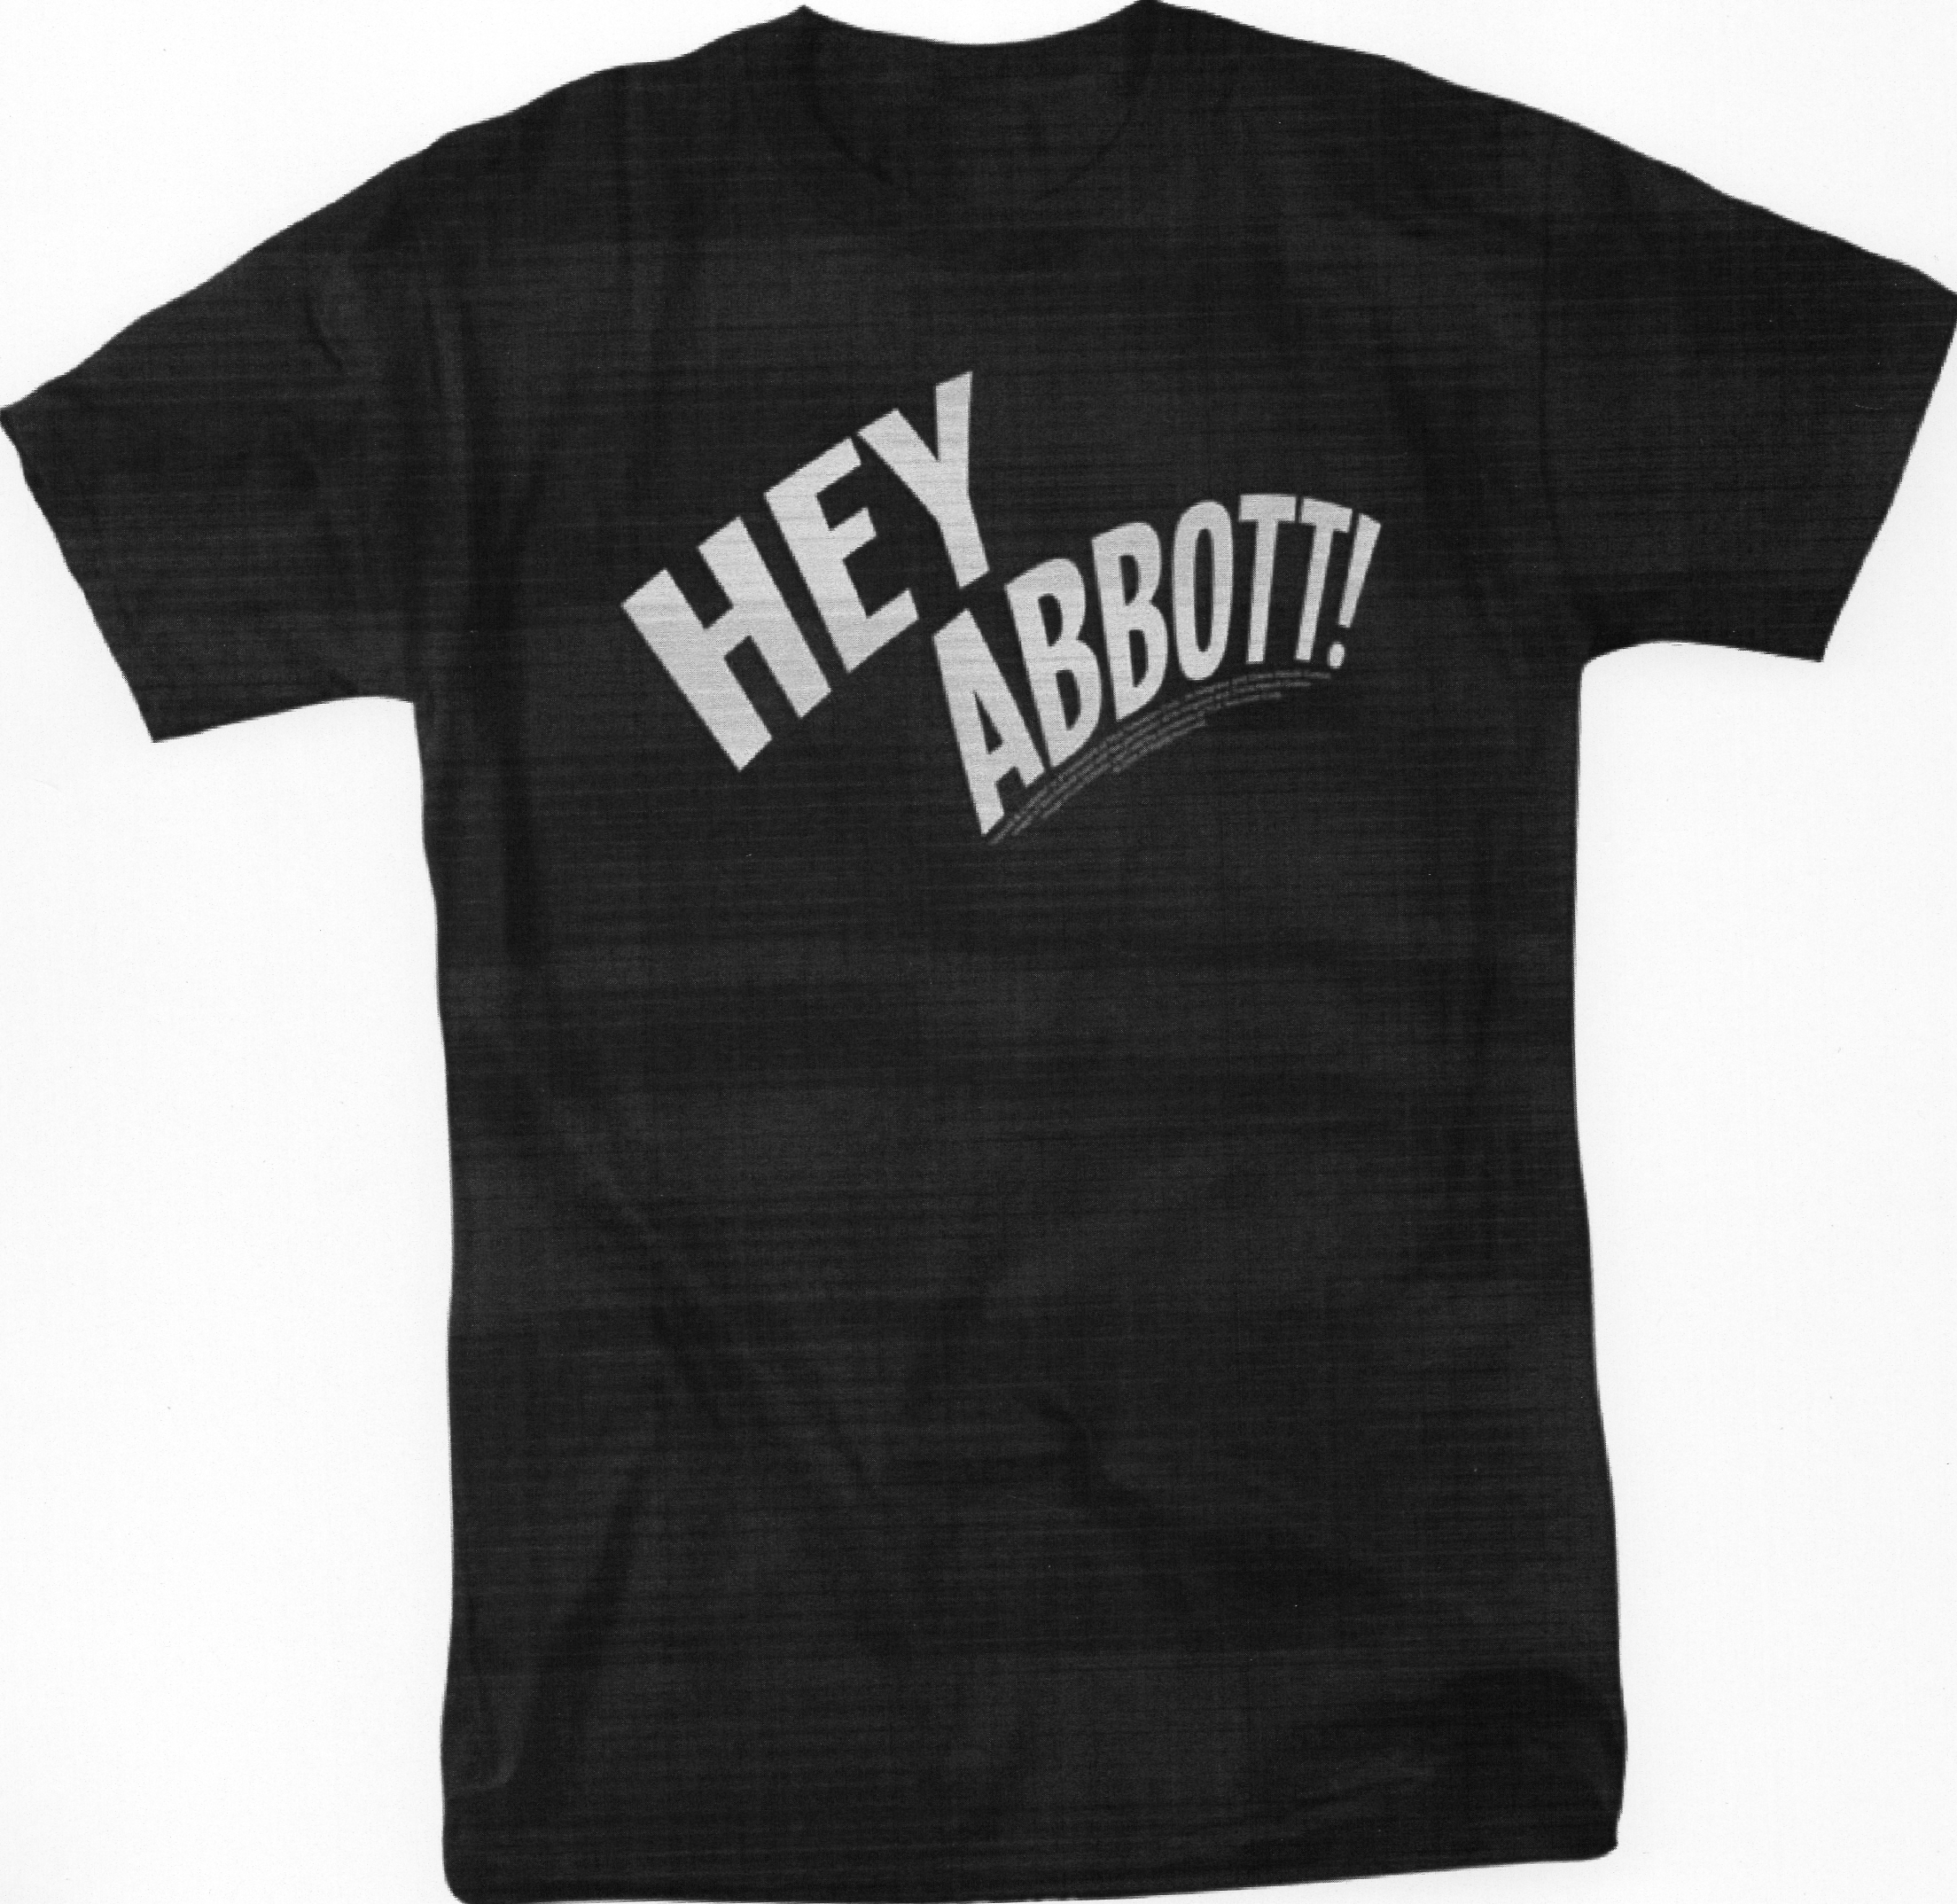 Hey, Abbott! Short Sleeve Tee